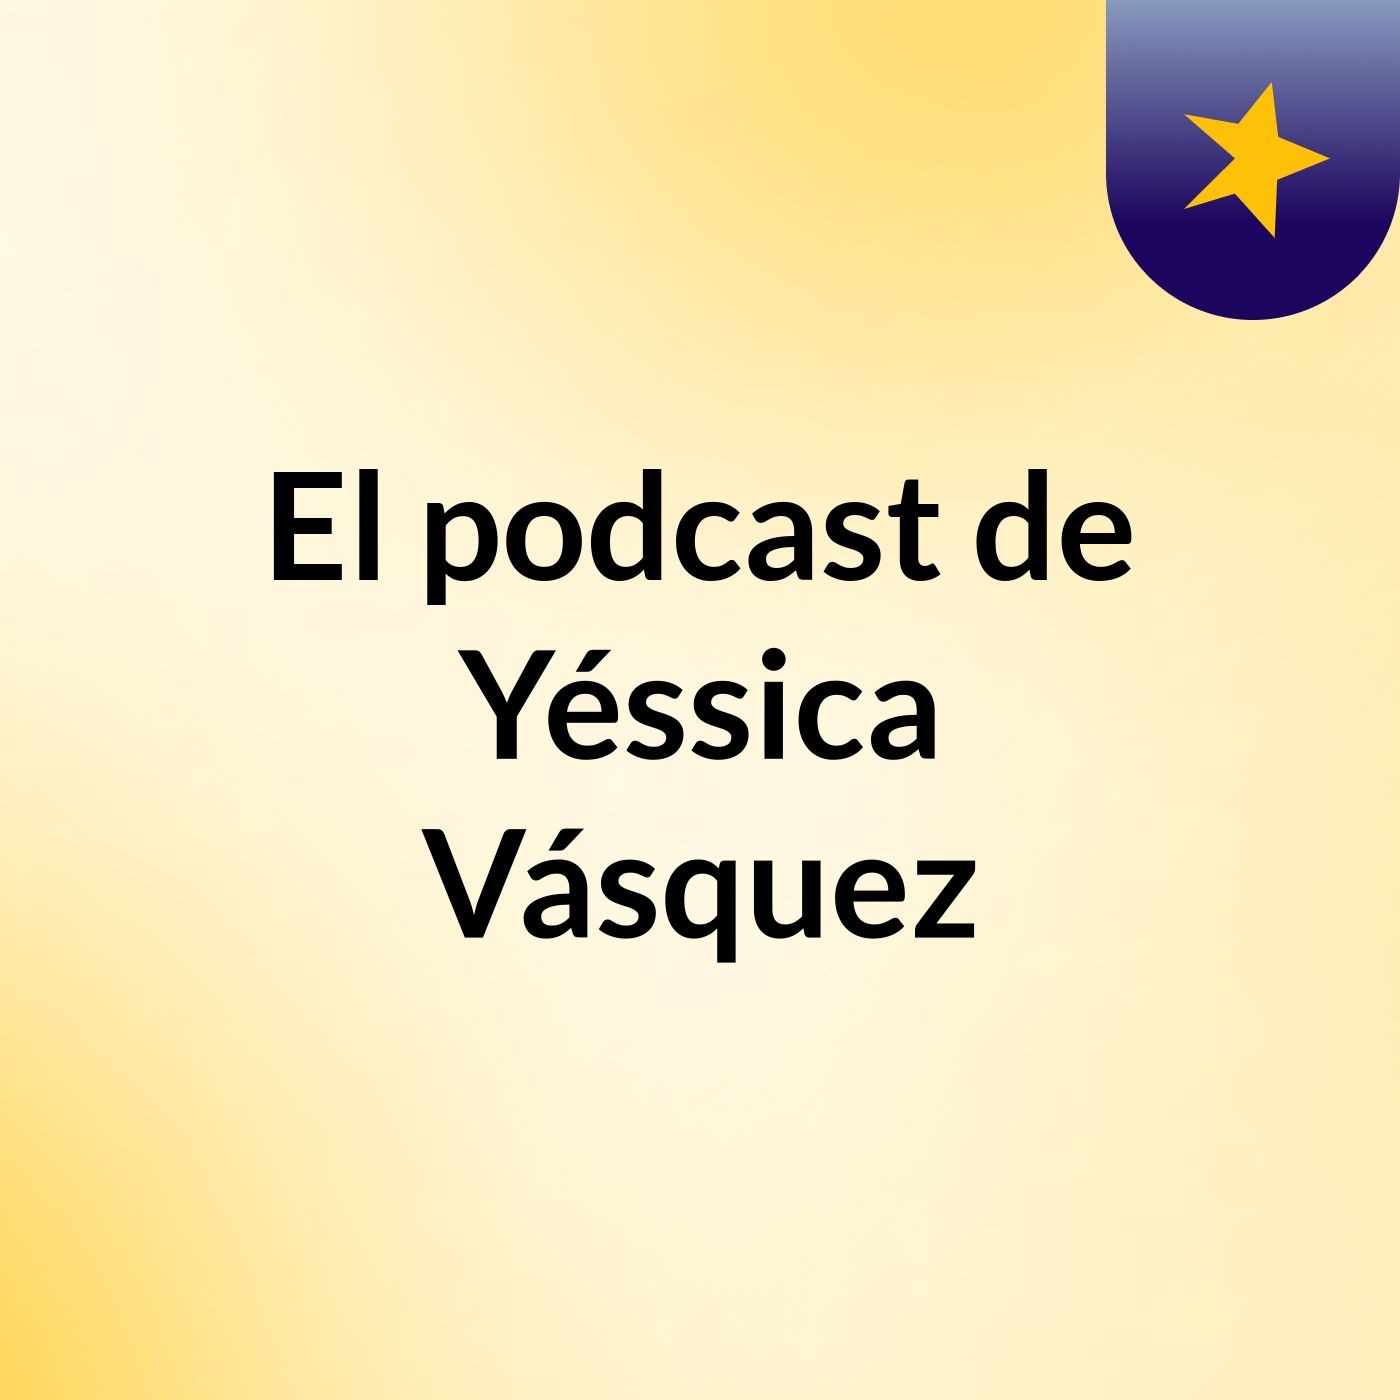 El podcast de Yéssica Vásquez